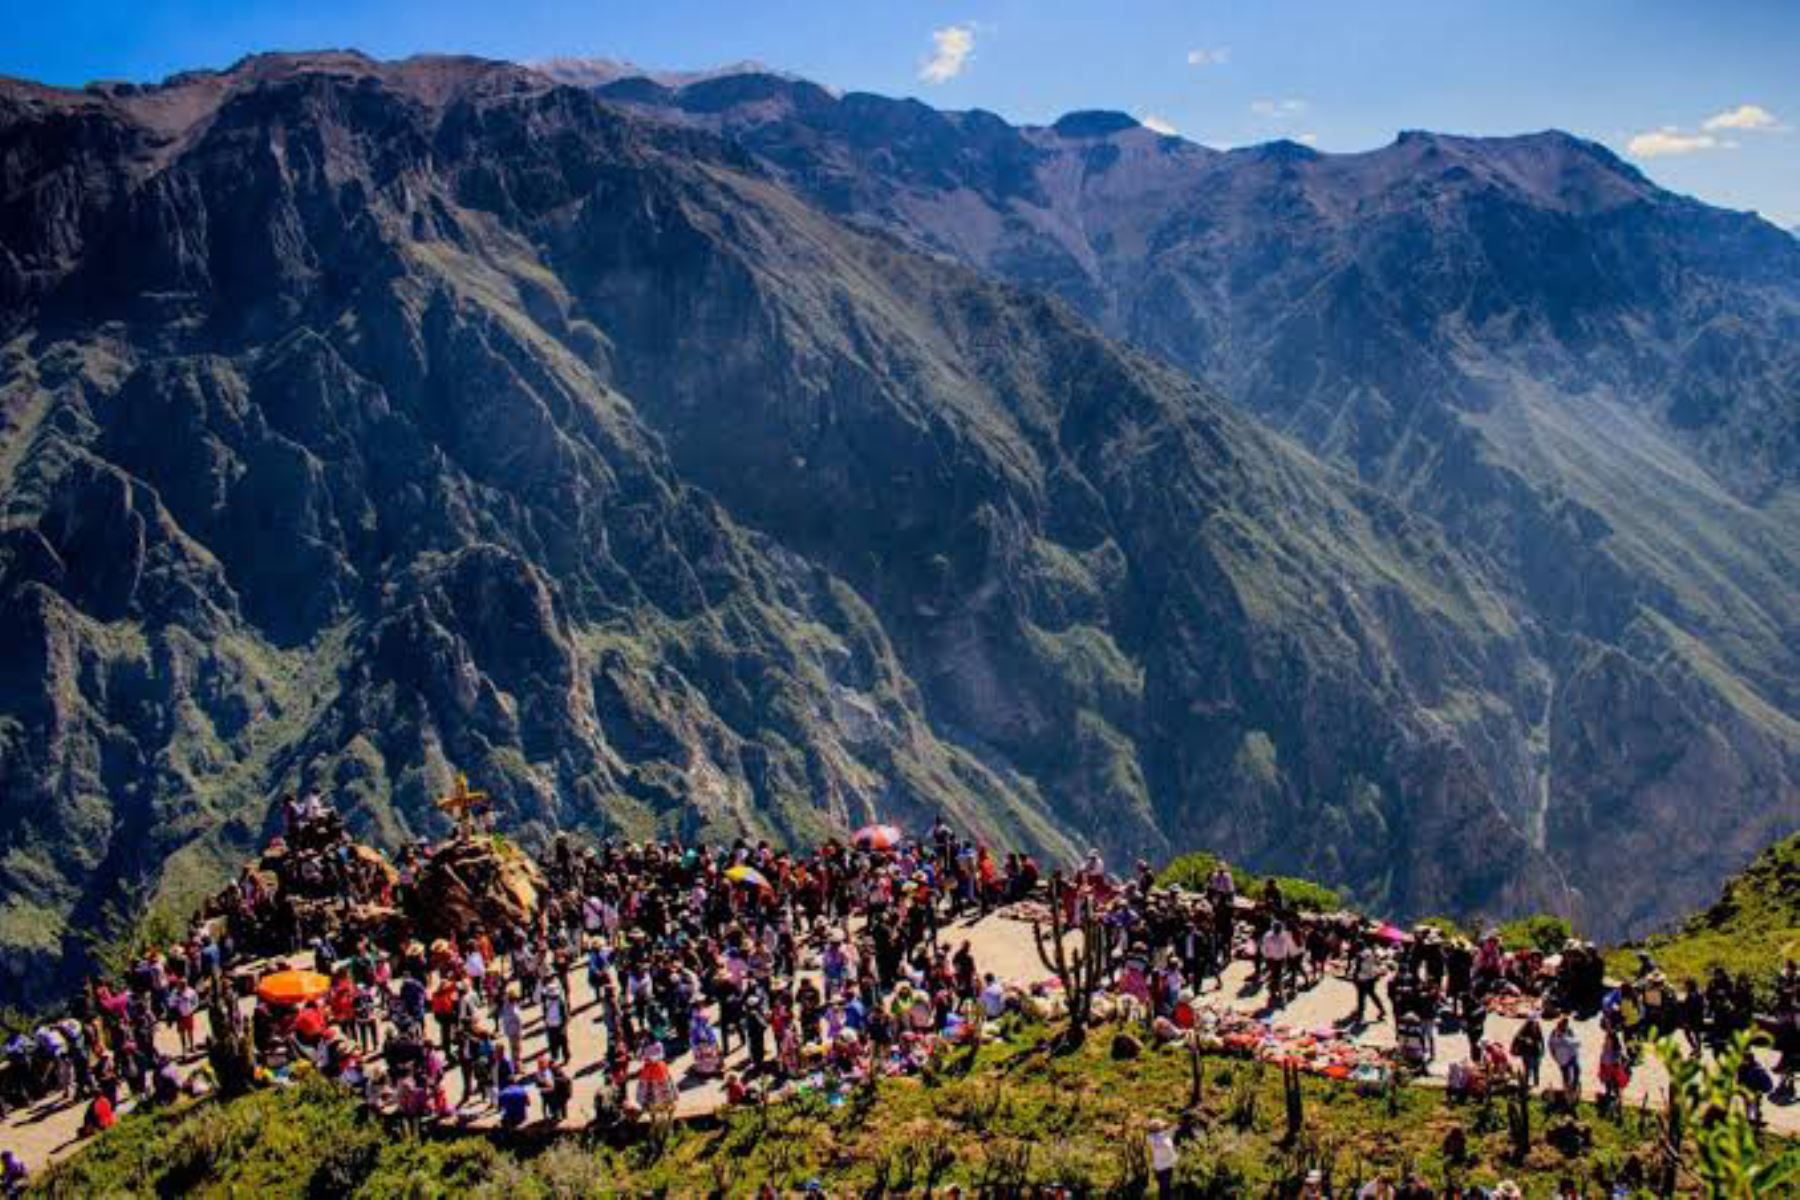 El valle del Colca recibió el año pasado más de 250,000 turistas y en el 2020, hasta el 15 de marzo, ingresaron 41,535. Foto: ANDINA/Difusión